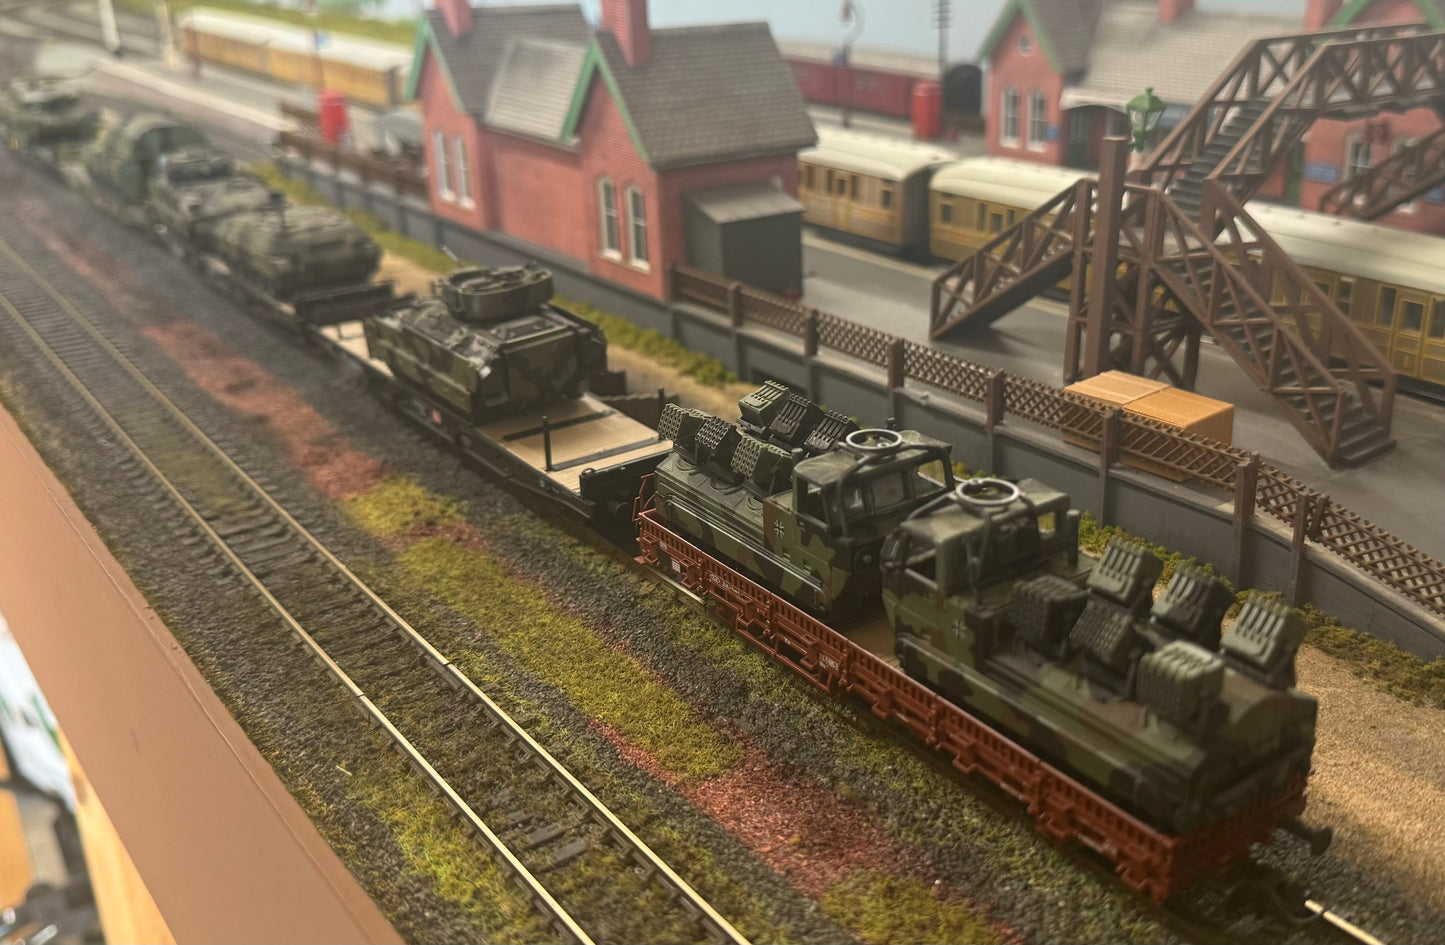 Roco (HO) German Army Train Bundle